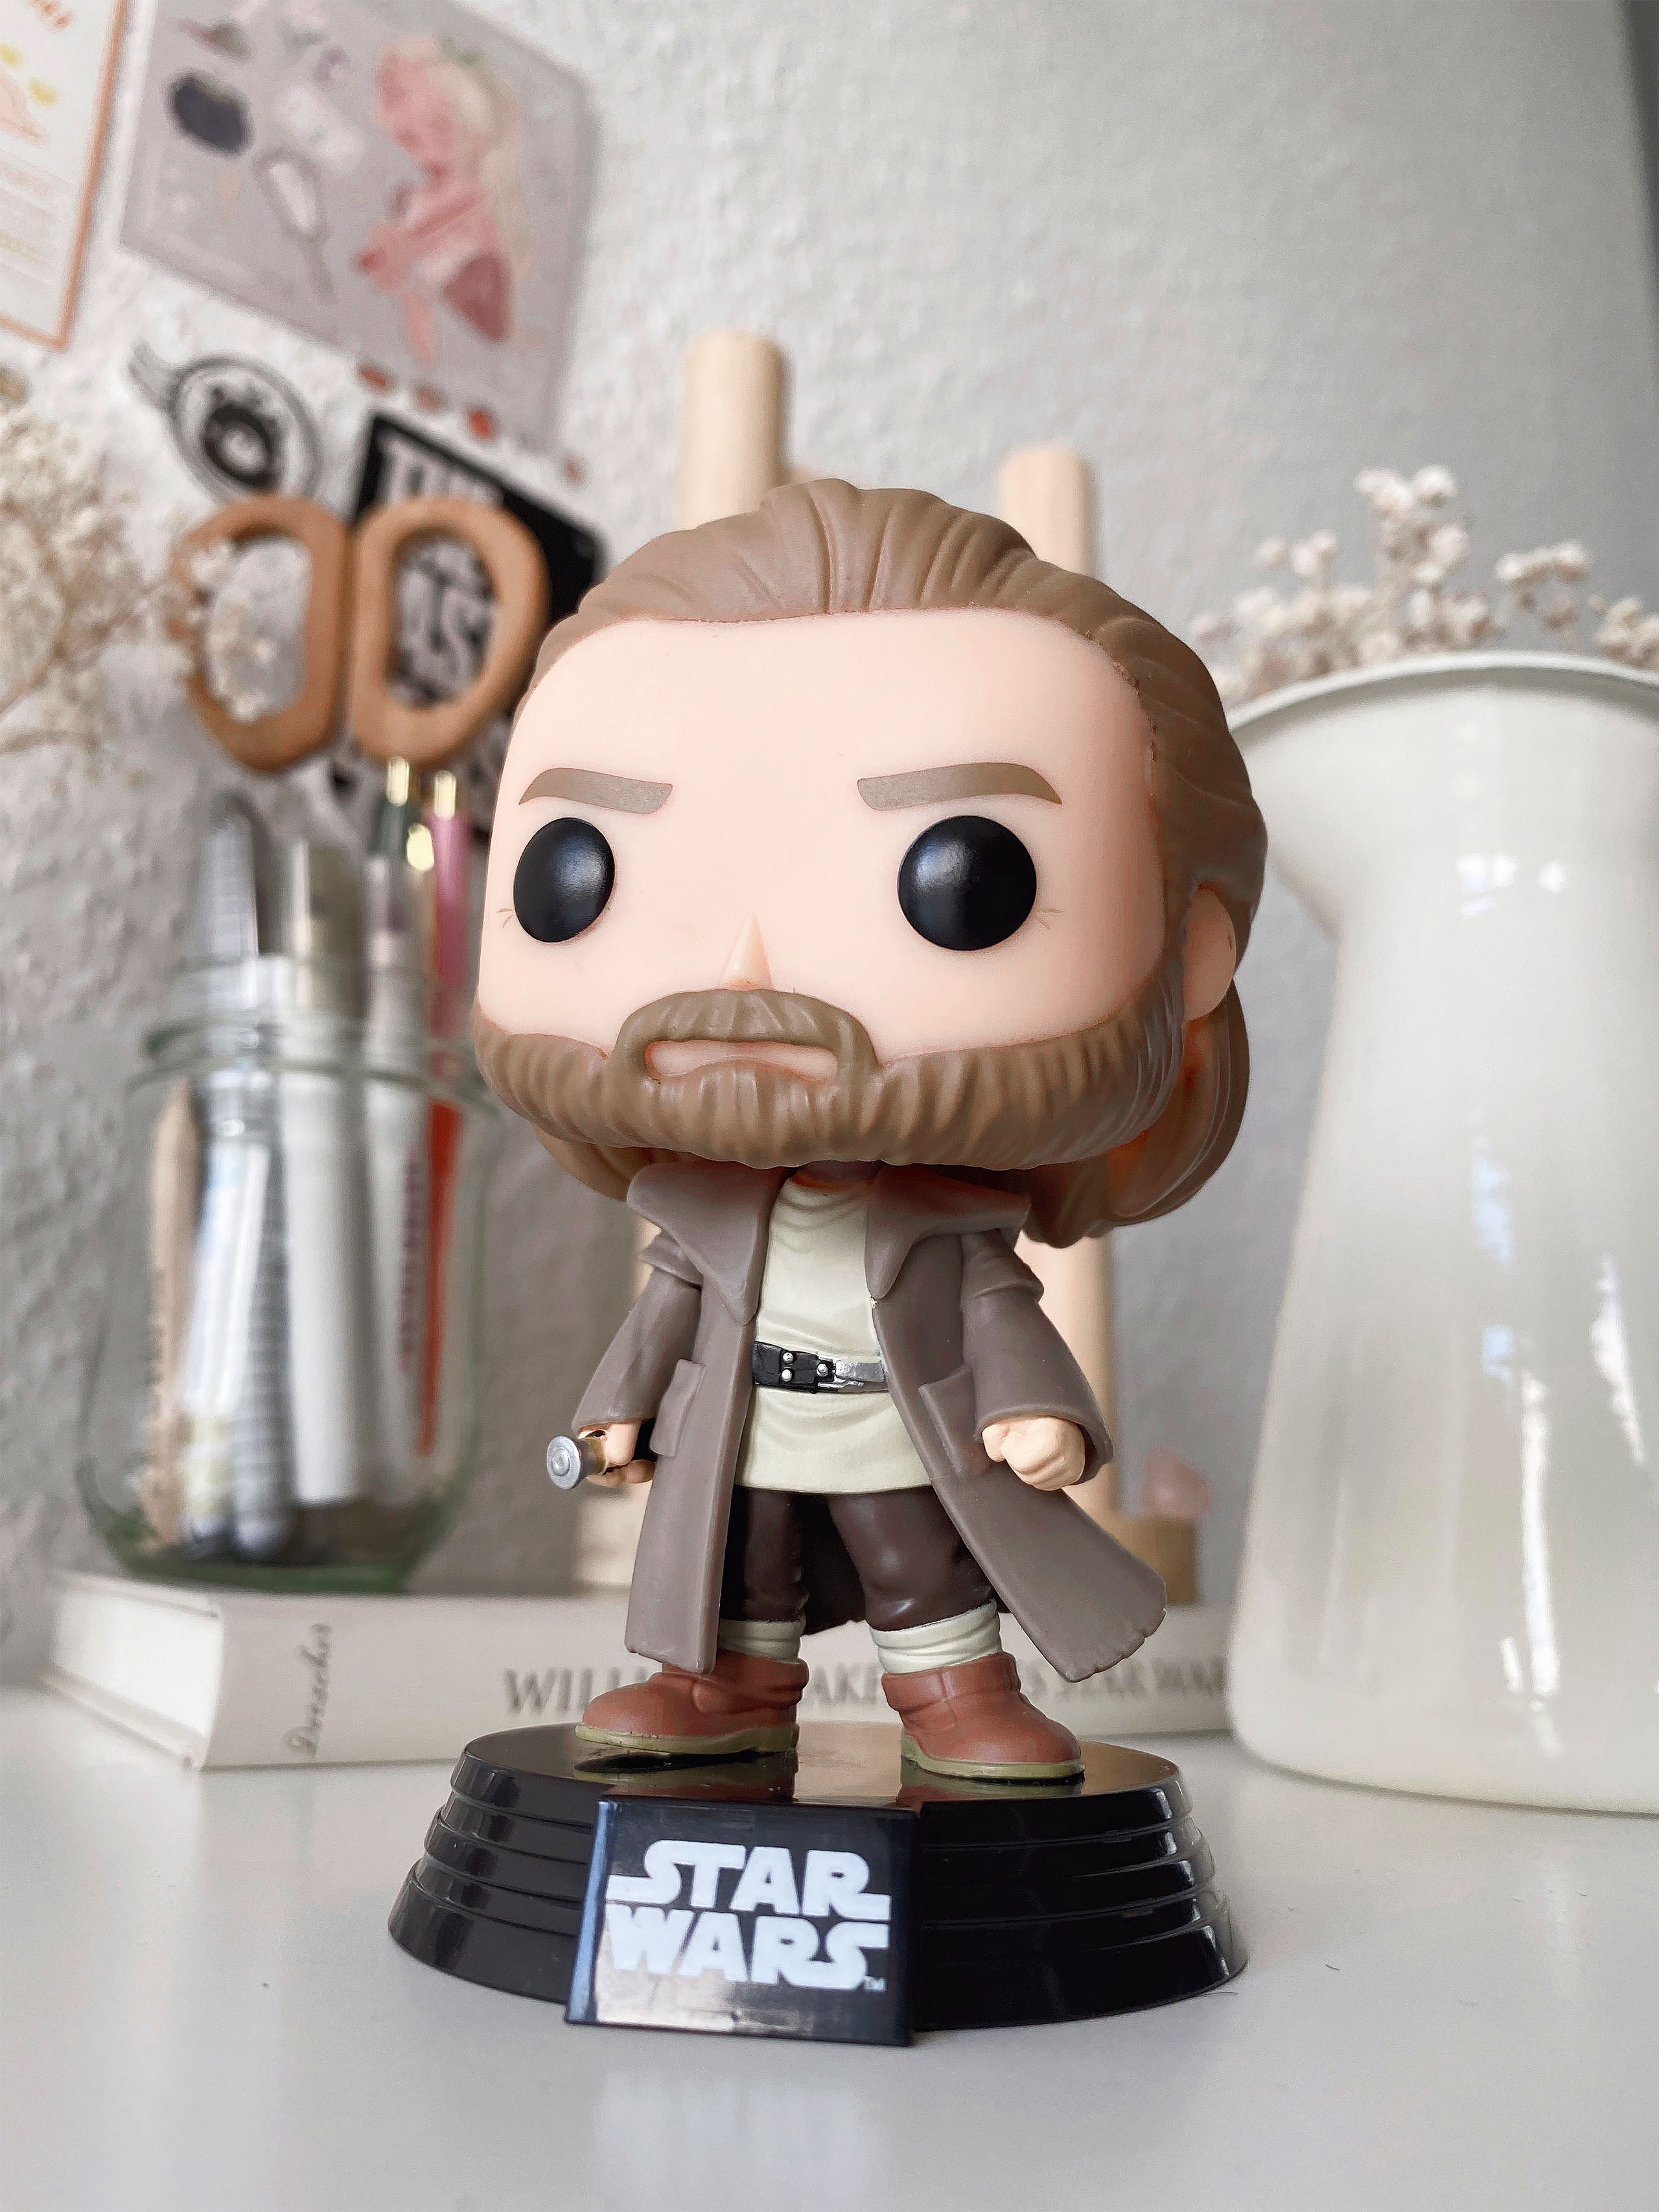 Obi-Wan Kenobi Funko Pop Bobblehead Figuur - Star Wars